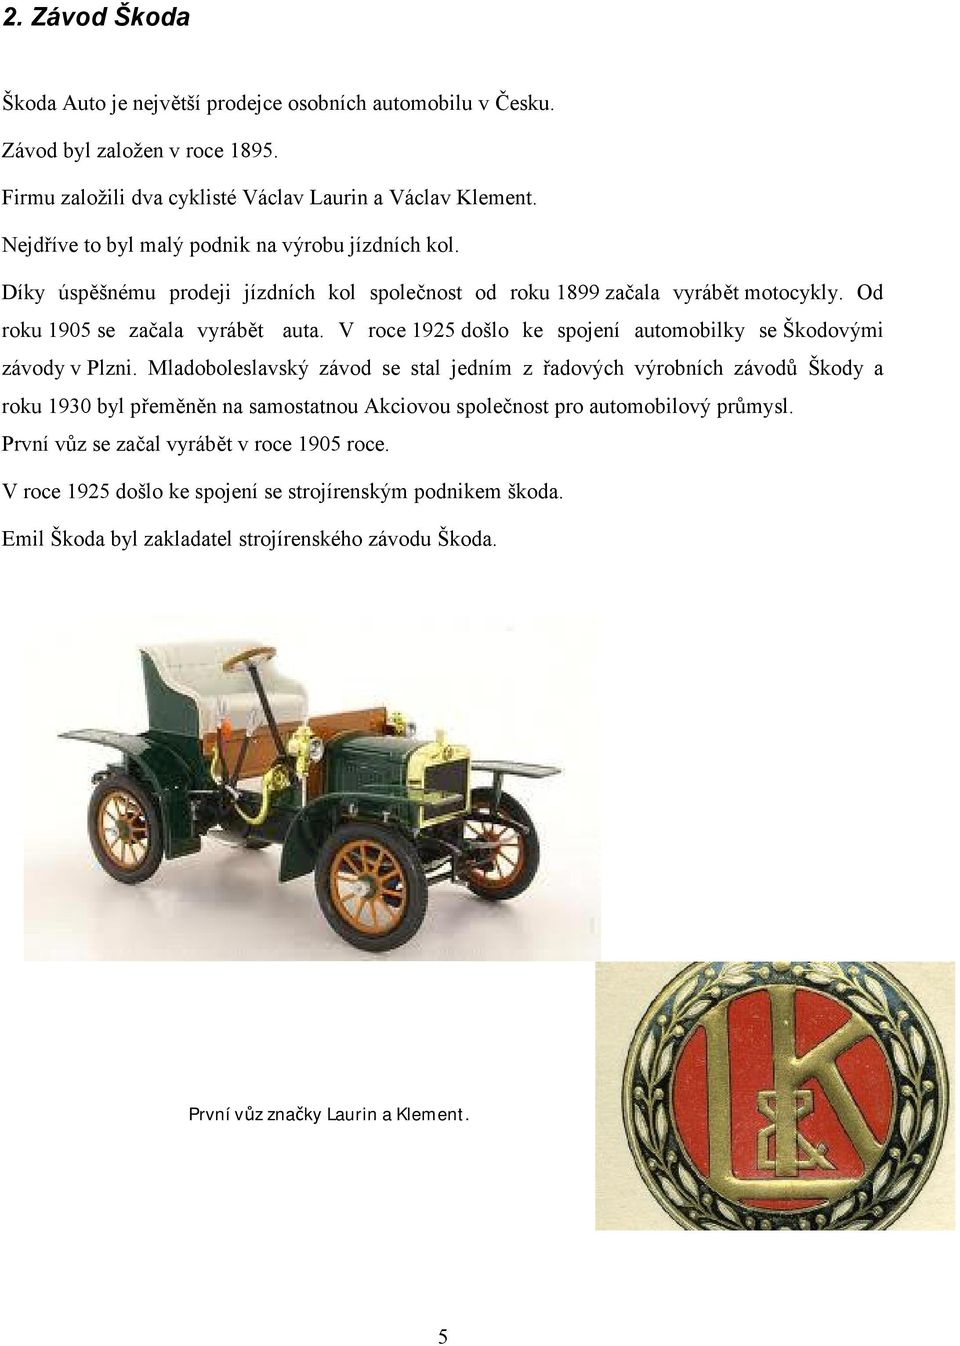 V roce 1925 došlo ke spojení automobilky se Škodovými závody v Plzni.